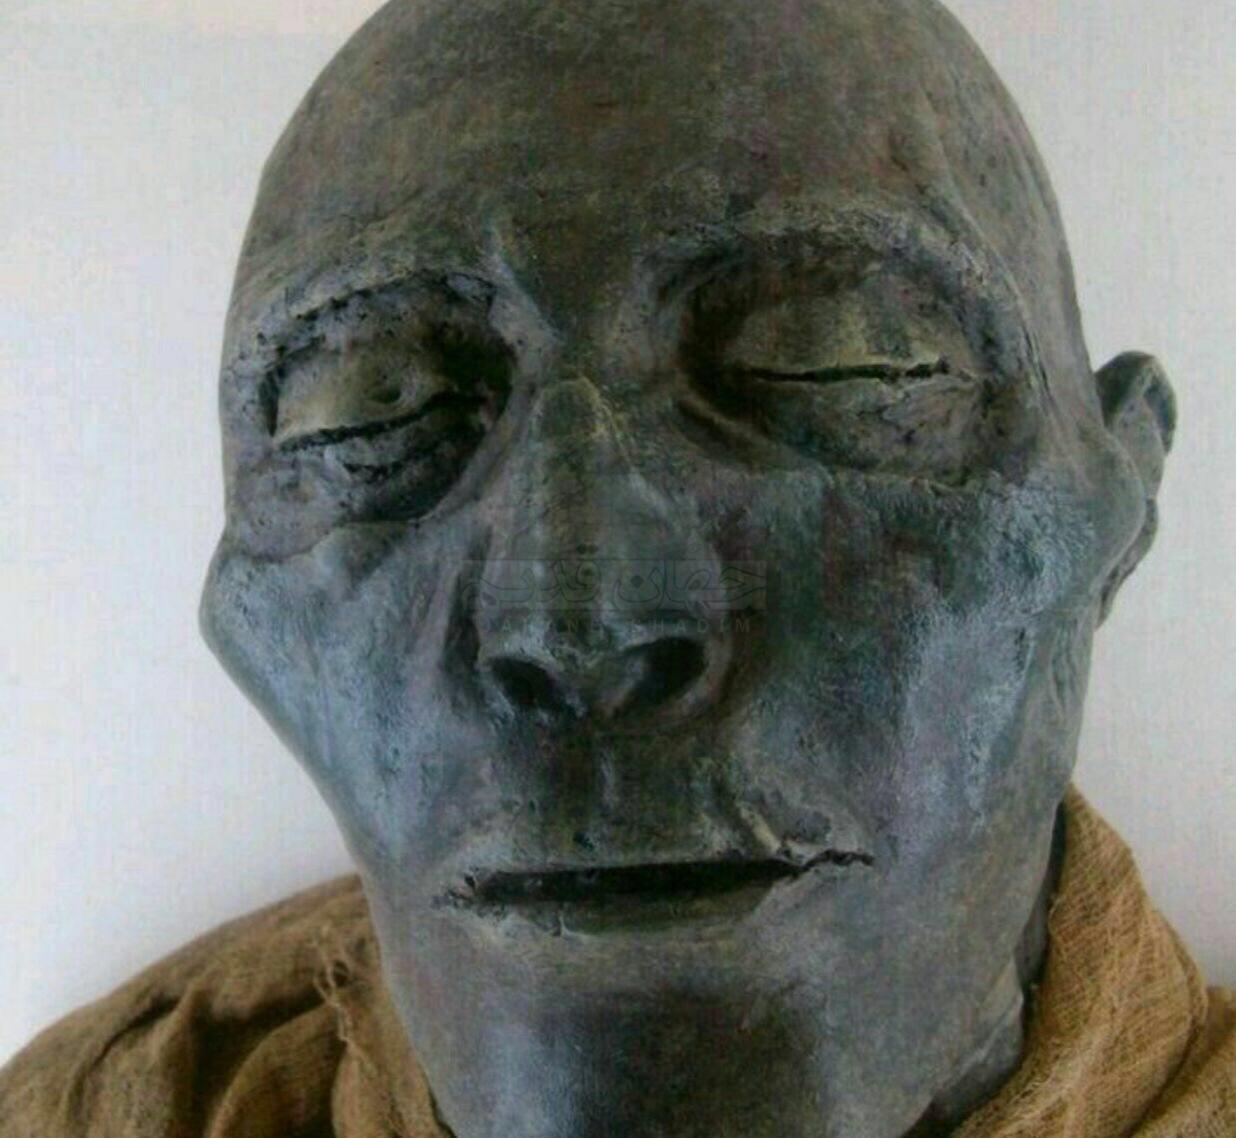 نمایی نزدیک از مومیایی رامسس کبیر!   او بزرگ ترین و قدرتمندترین فرعون مصر باستان بود. باستان‌شناسان بر این باورند "اوزیماندیاس"در تورات حجت